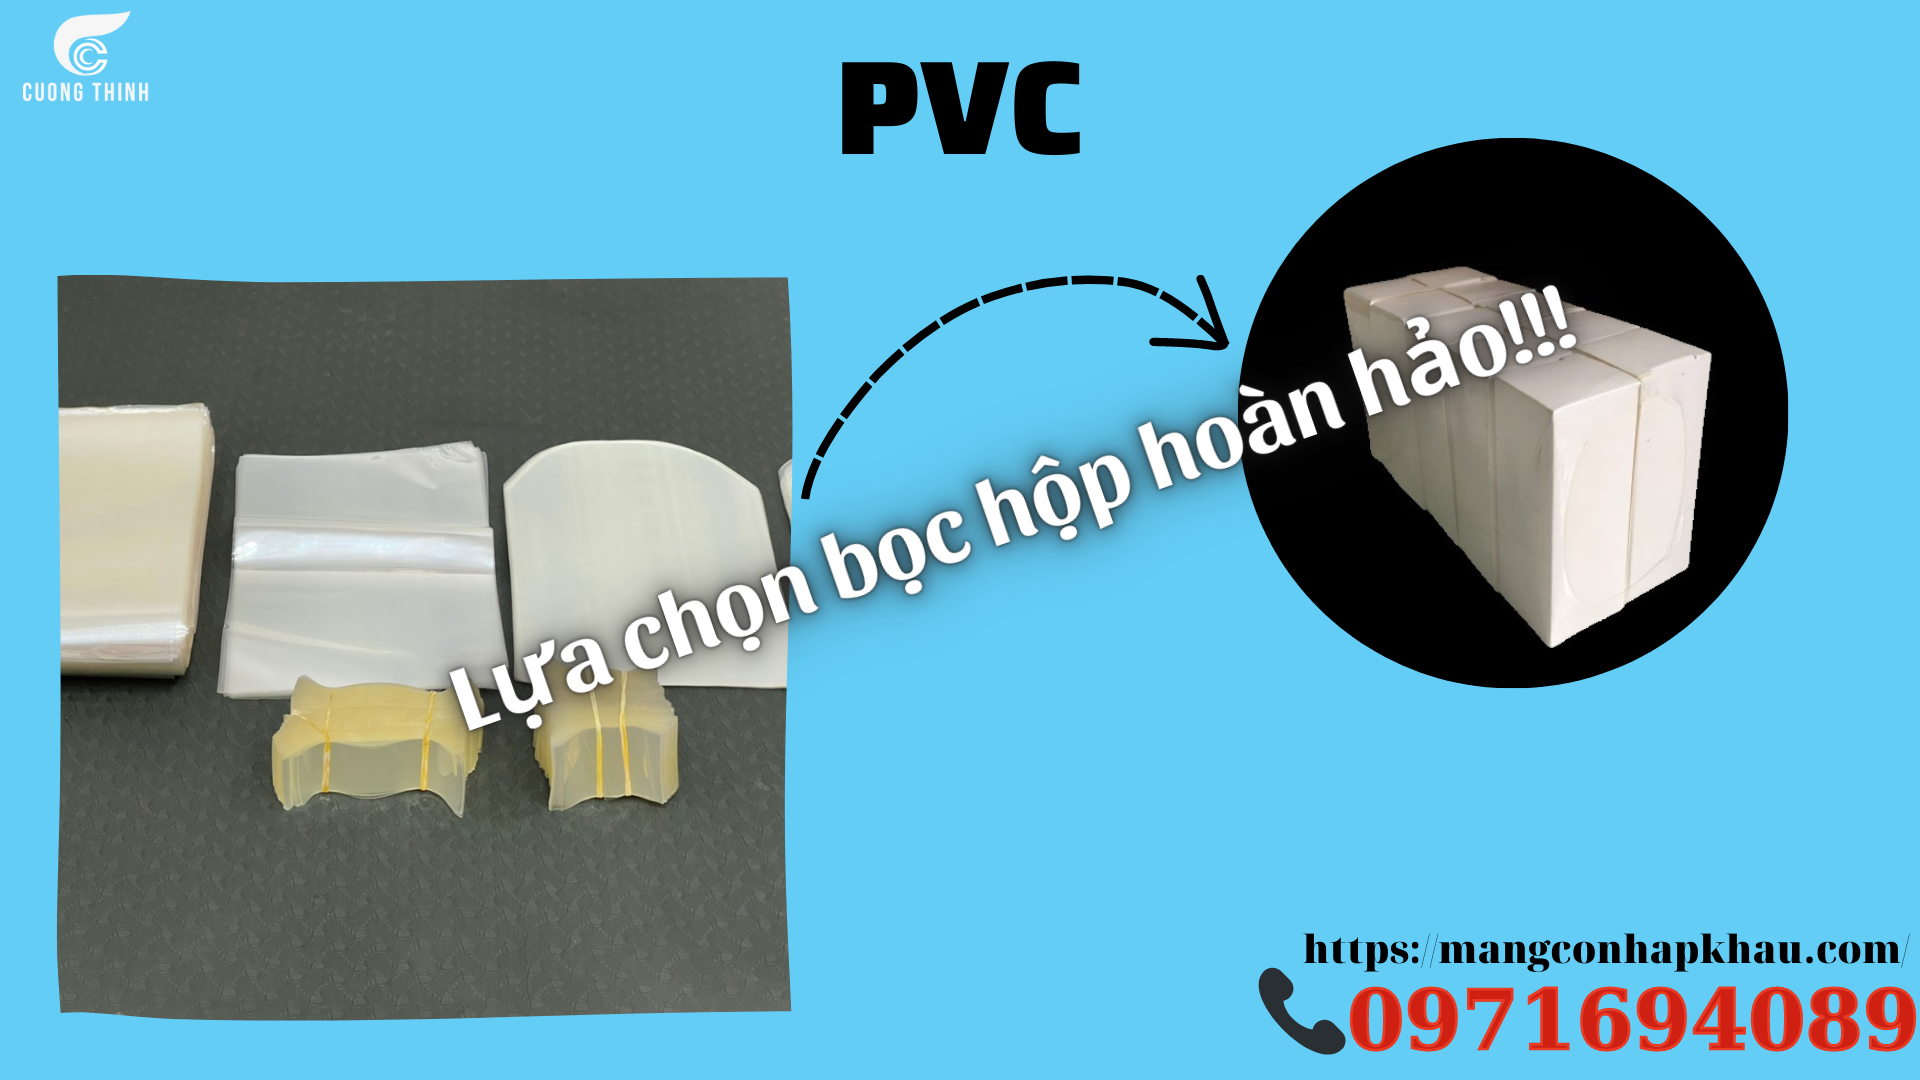 PVC, lựa chọn bọc hộp hoàn hảo